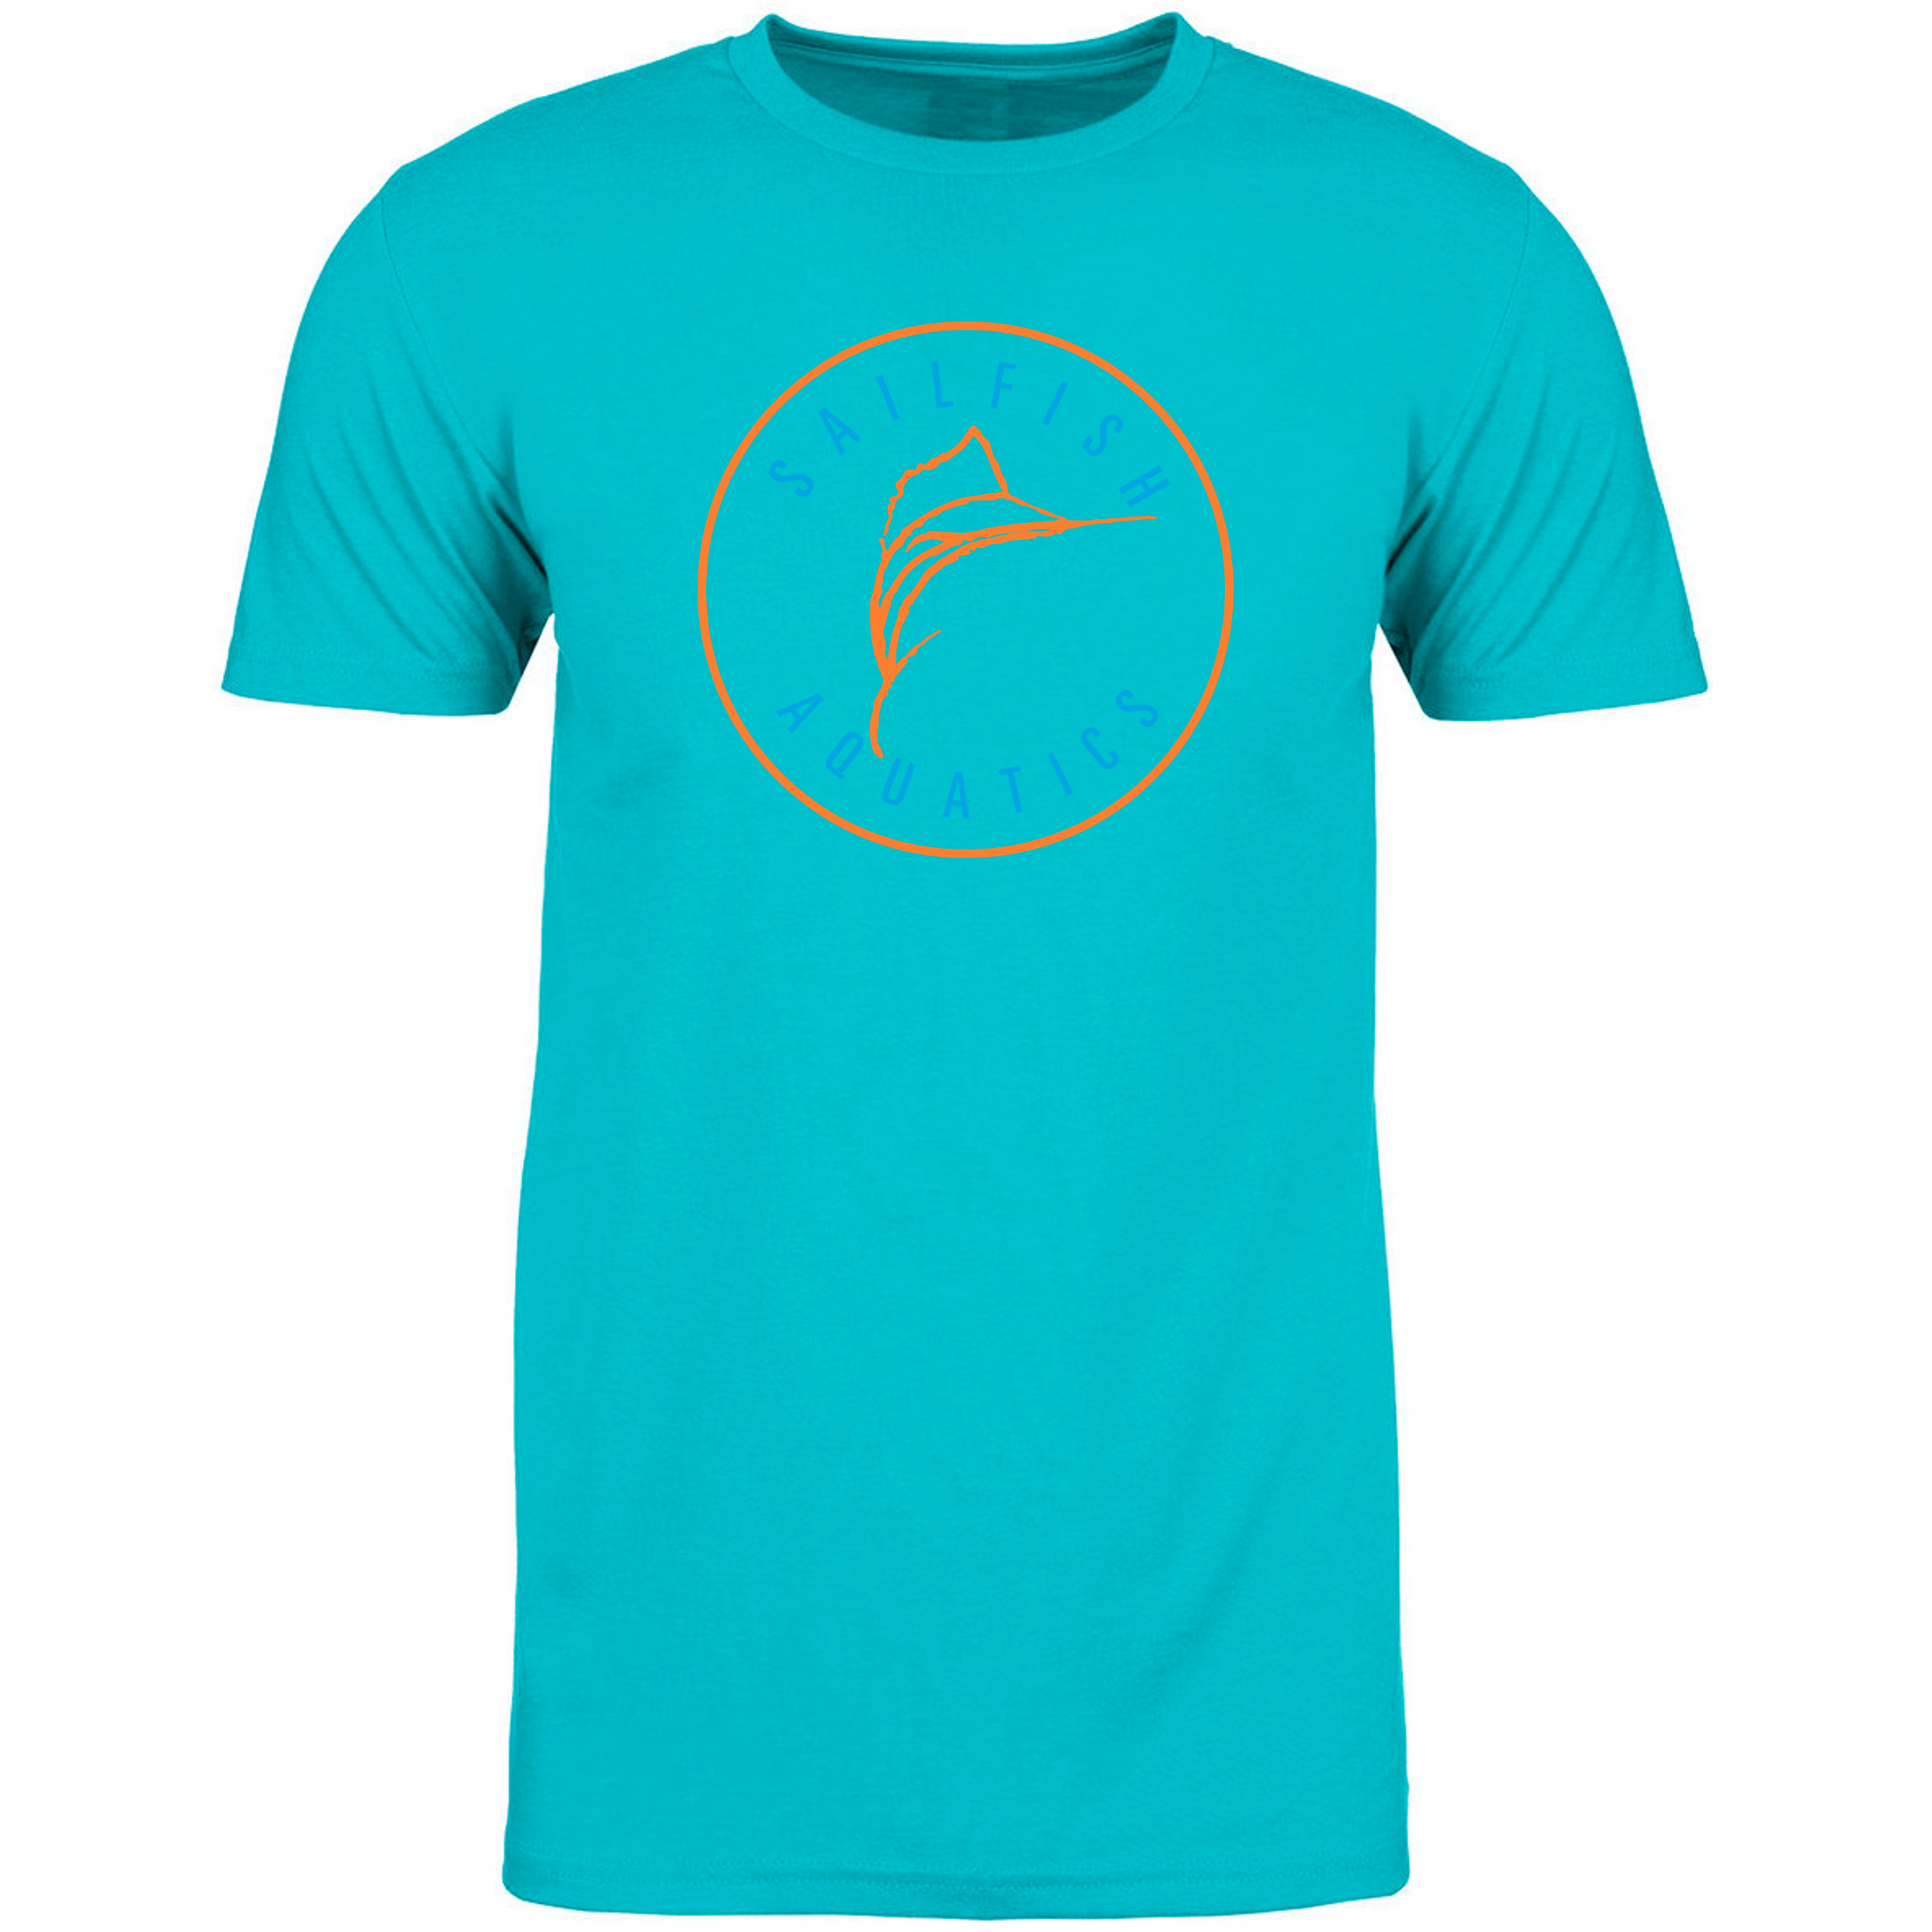 Team T-Shirt  - Sailfish